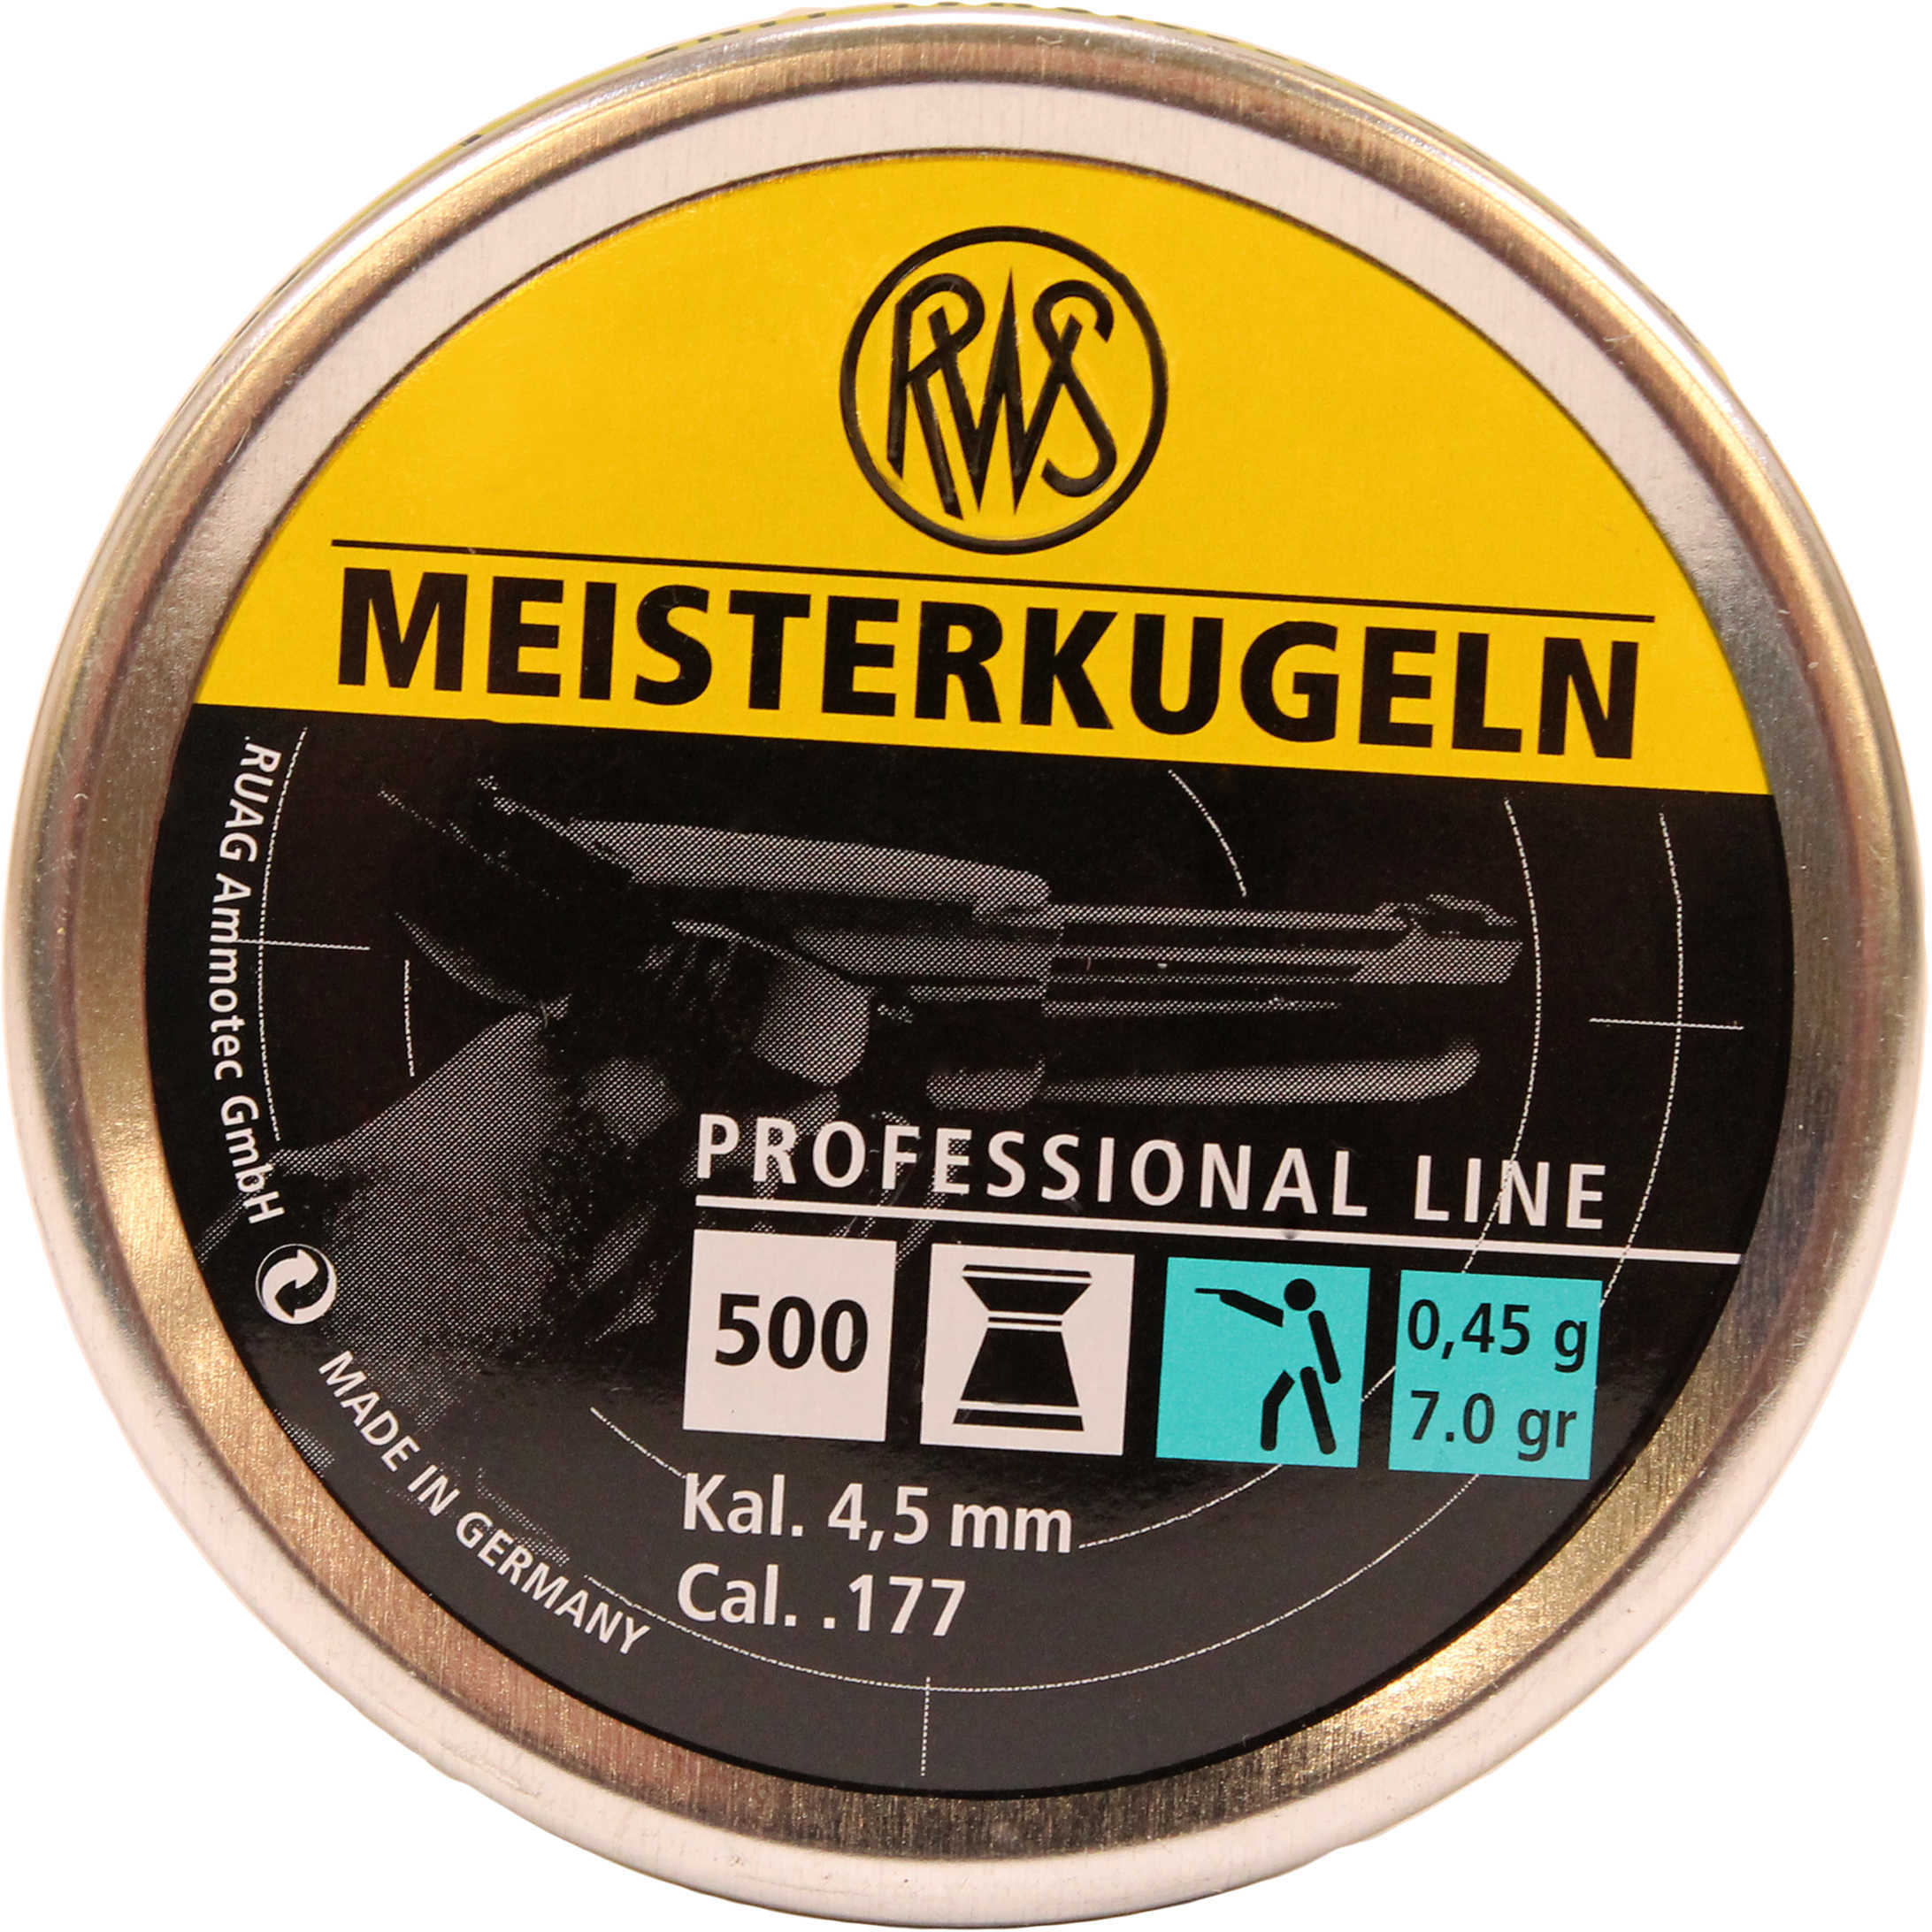 RWS Meisterkugeln Pistol Pellets .177 Caliber, 7 Grains, Per 500 Md: 2315034